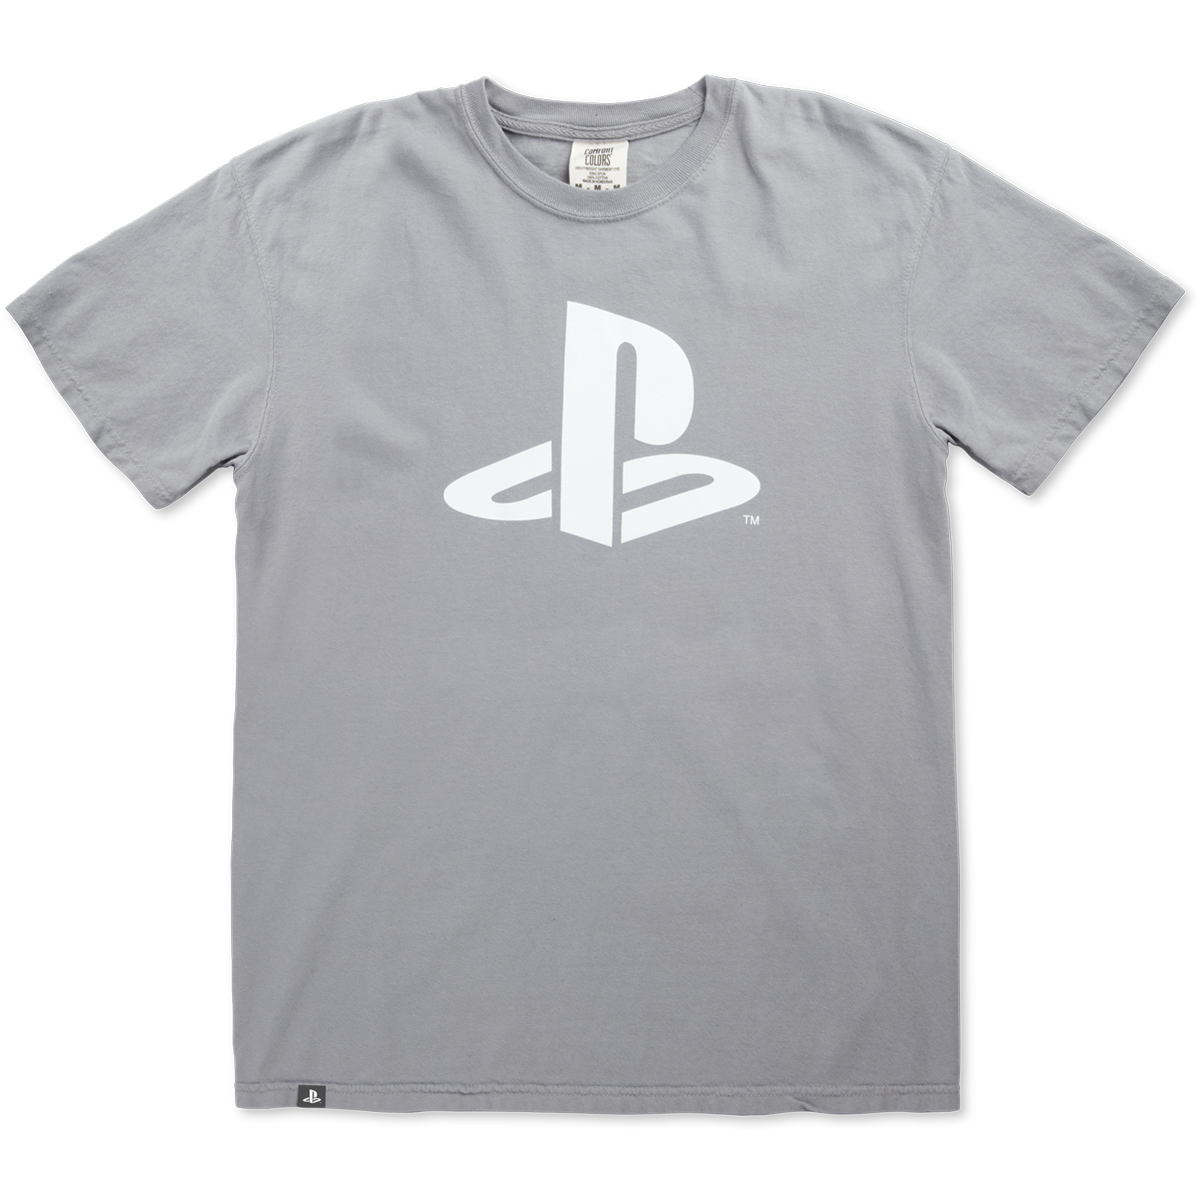 PS Gear - Camiseta con el logo de PlayStation